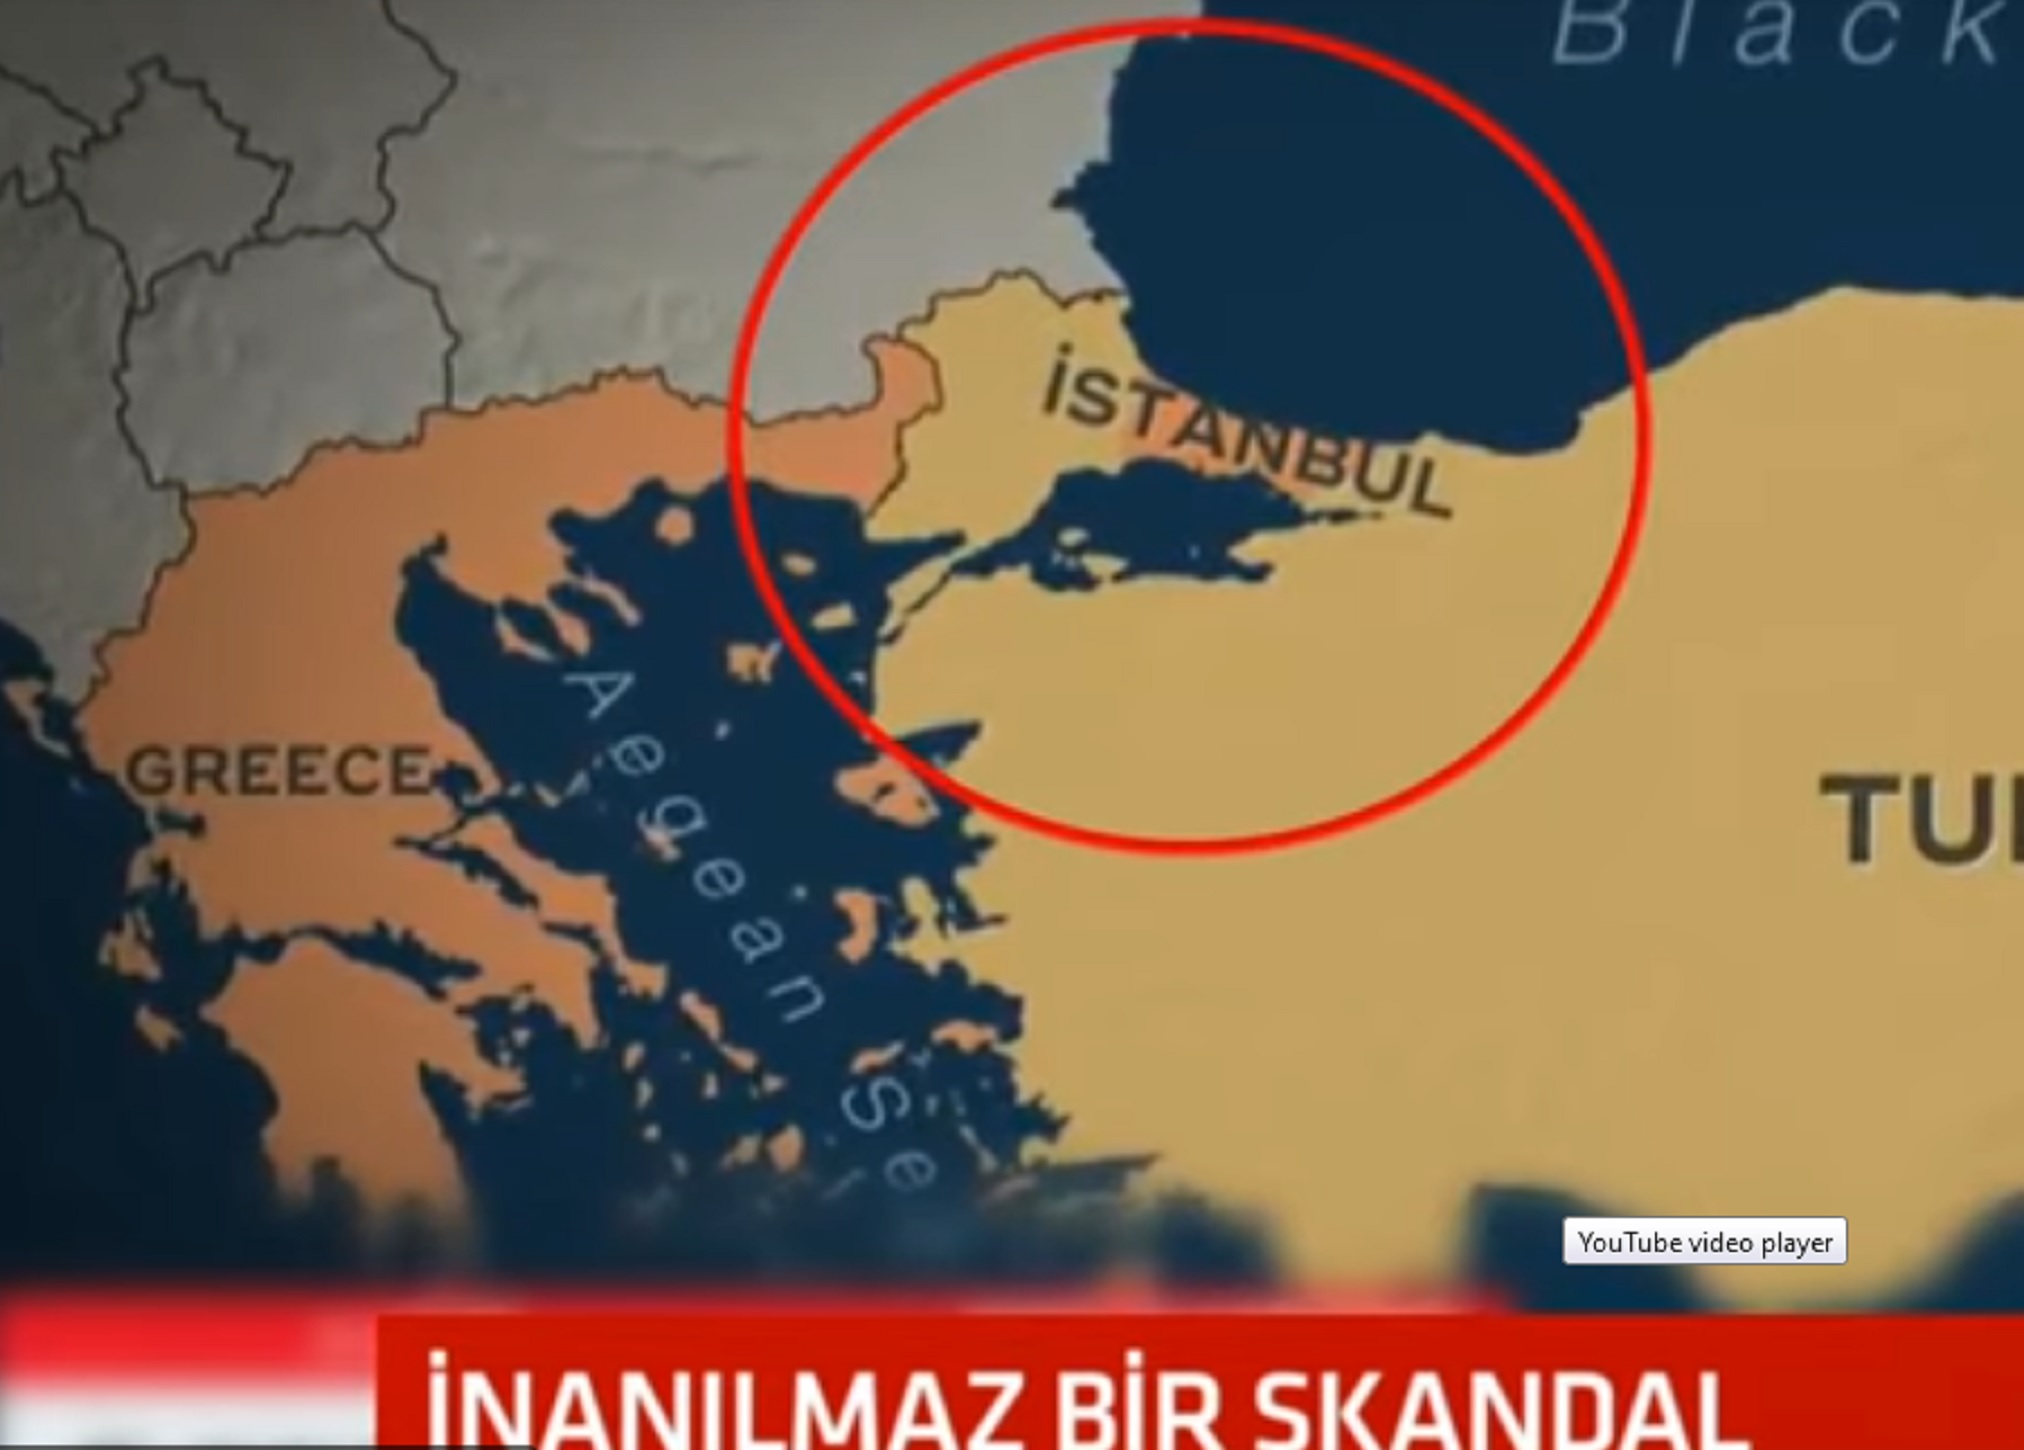 Τουρκία εναντίον του CBS:  Έδειξε ελληνική την Κωνσταντινούπολη σε χάρτη